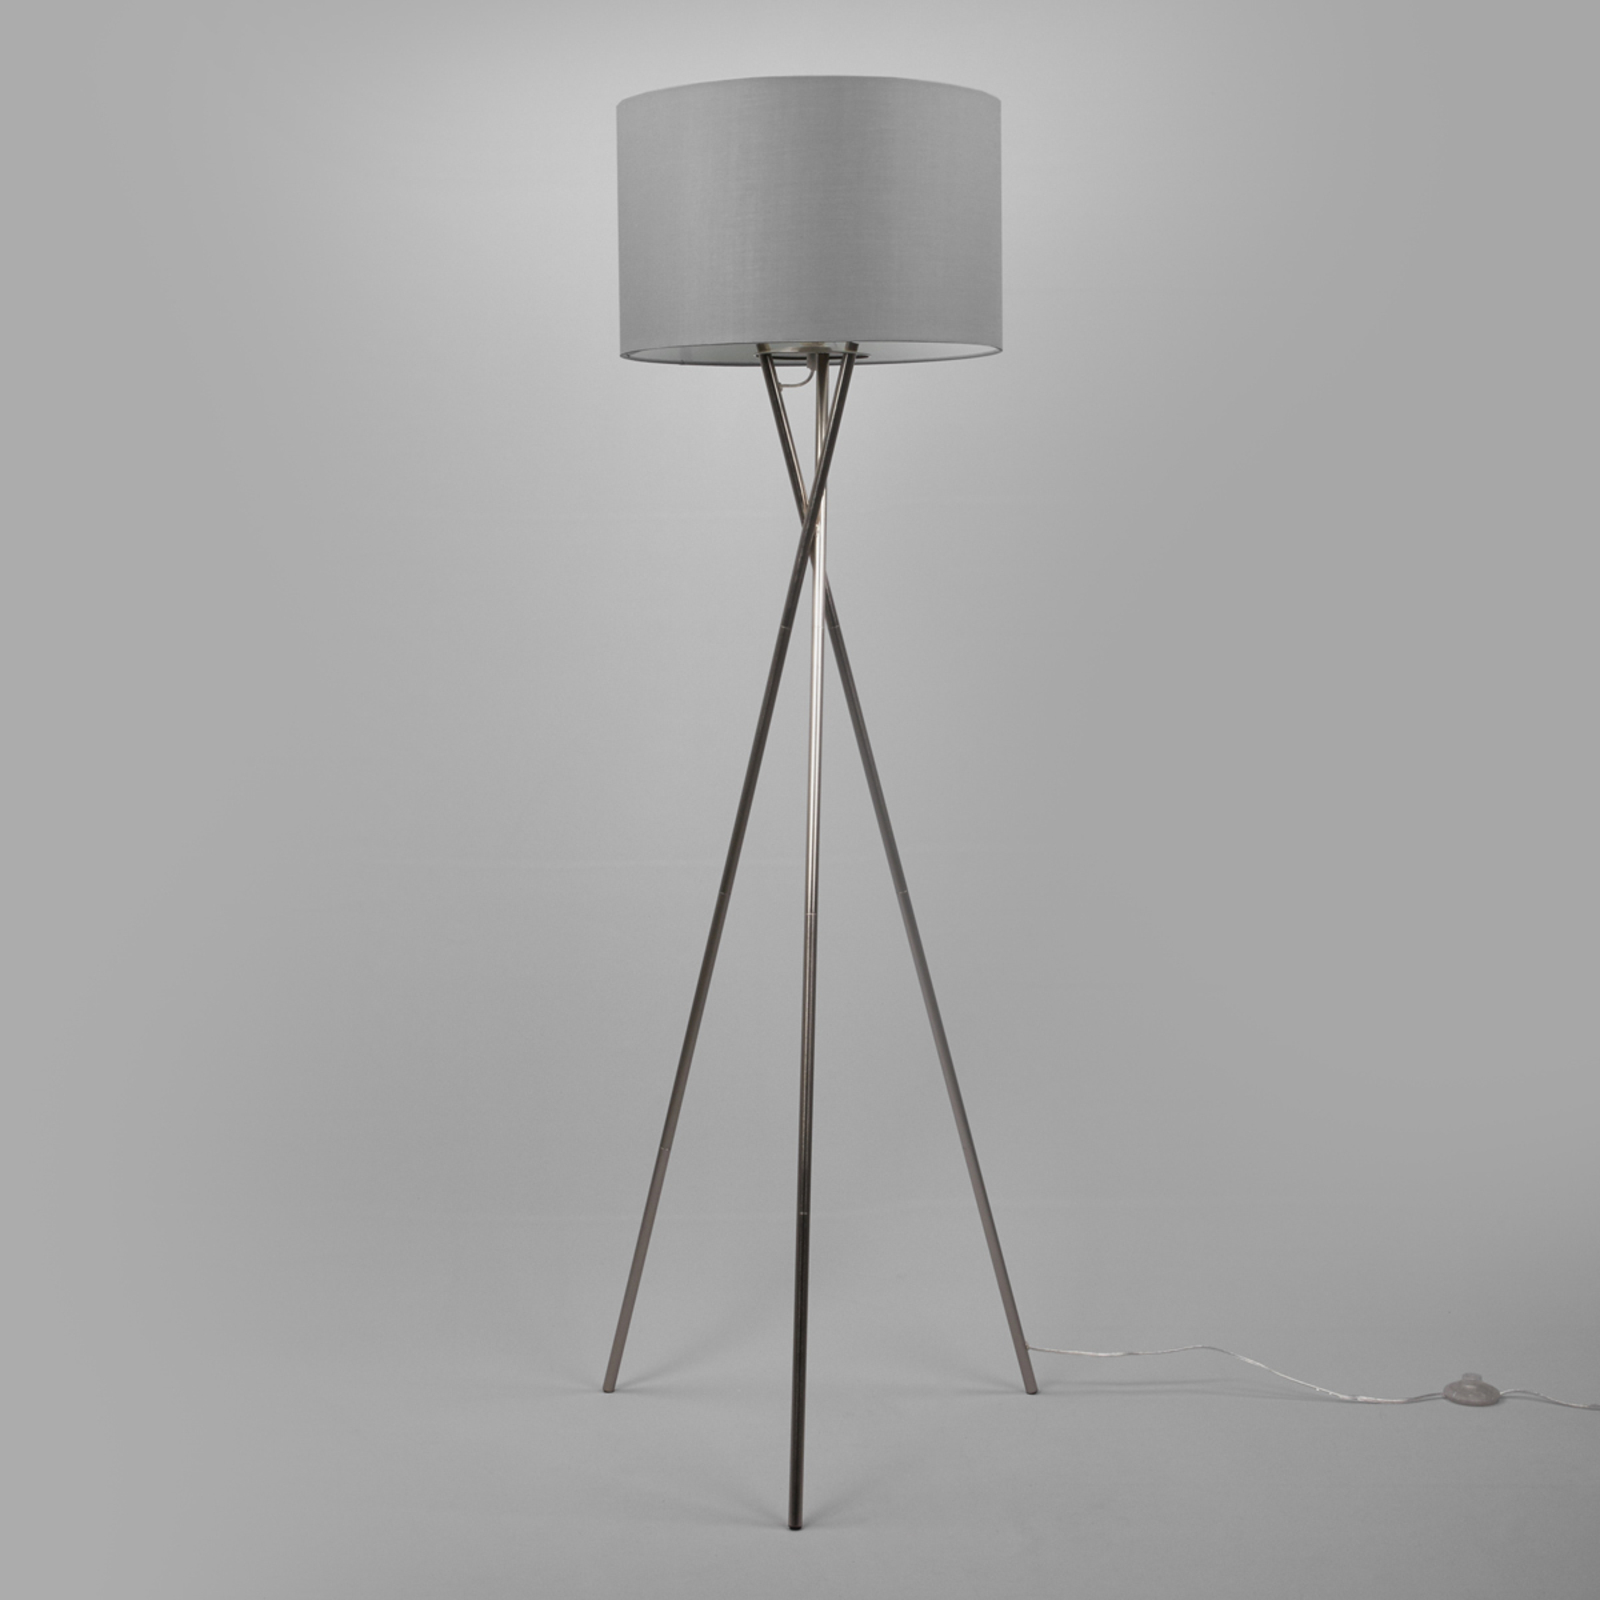 Trójnożna lampa stojąca Fiby z szarym kloszem